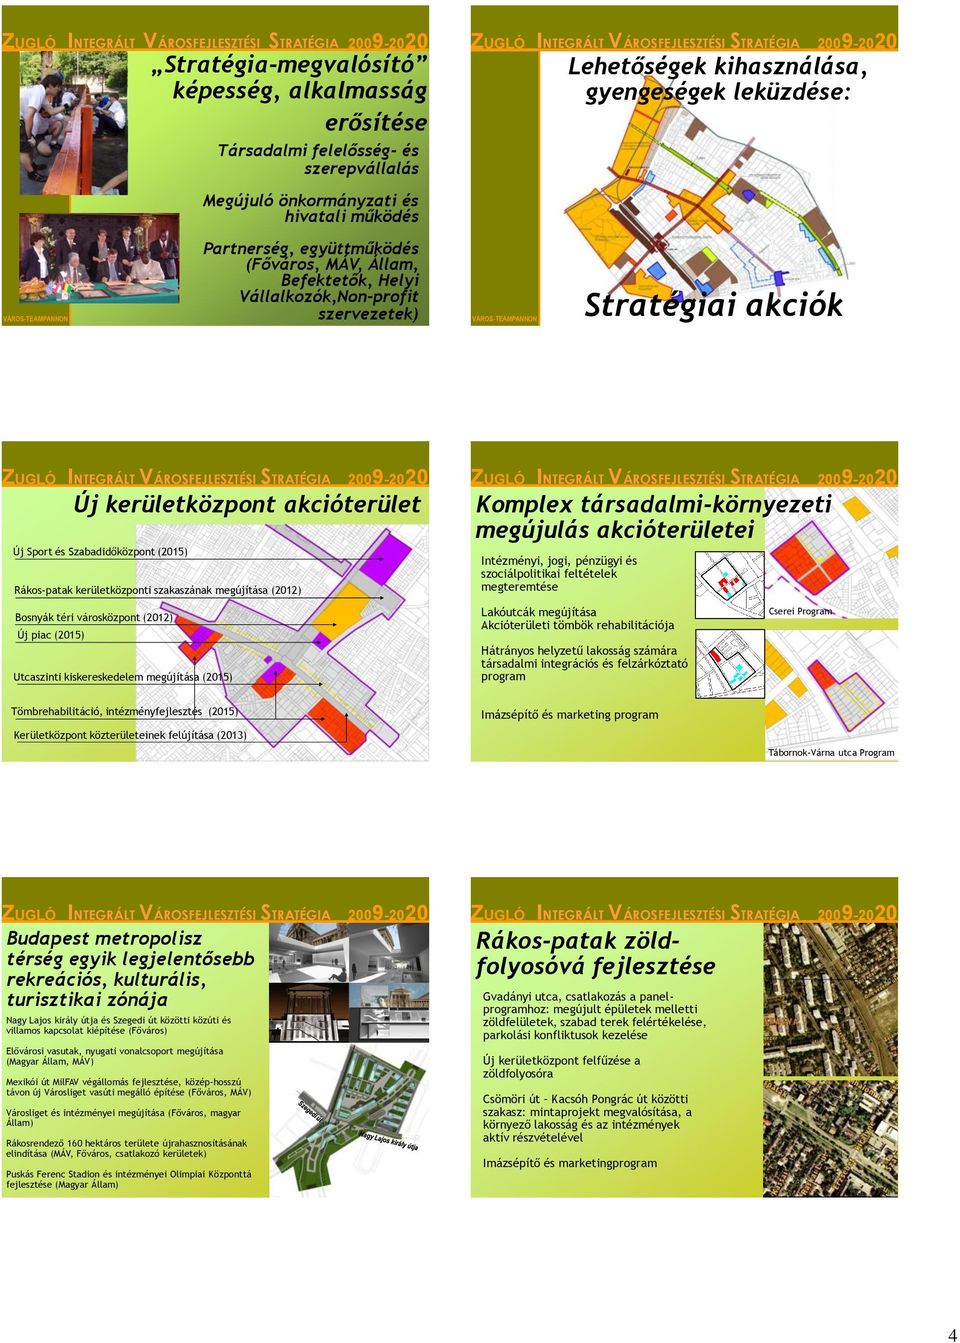 kerületközponti szakaszának megújítása (2012) Bosnyák téri városközpont (2012) Új piac (2015) Utcaszinti kiskereskedelem megújítása (2015) Komplex társadalmi-környezeti megújulás akcióterületei